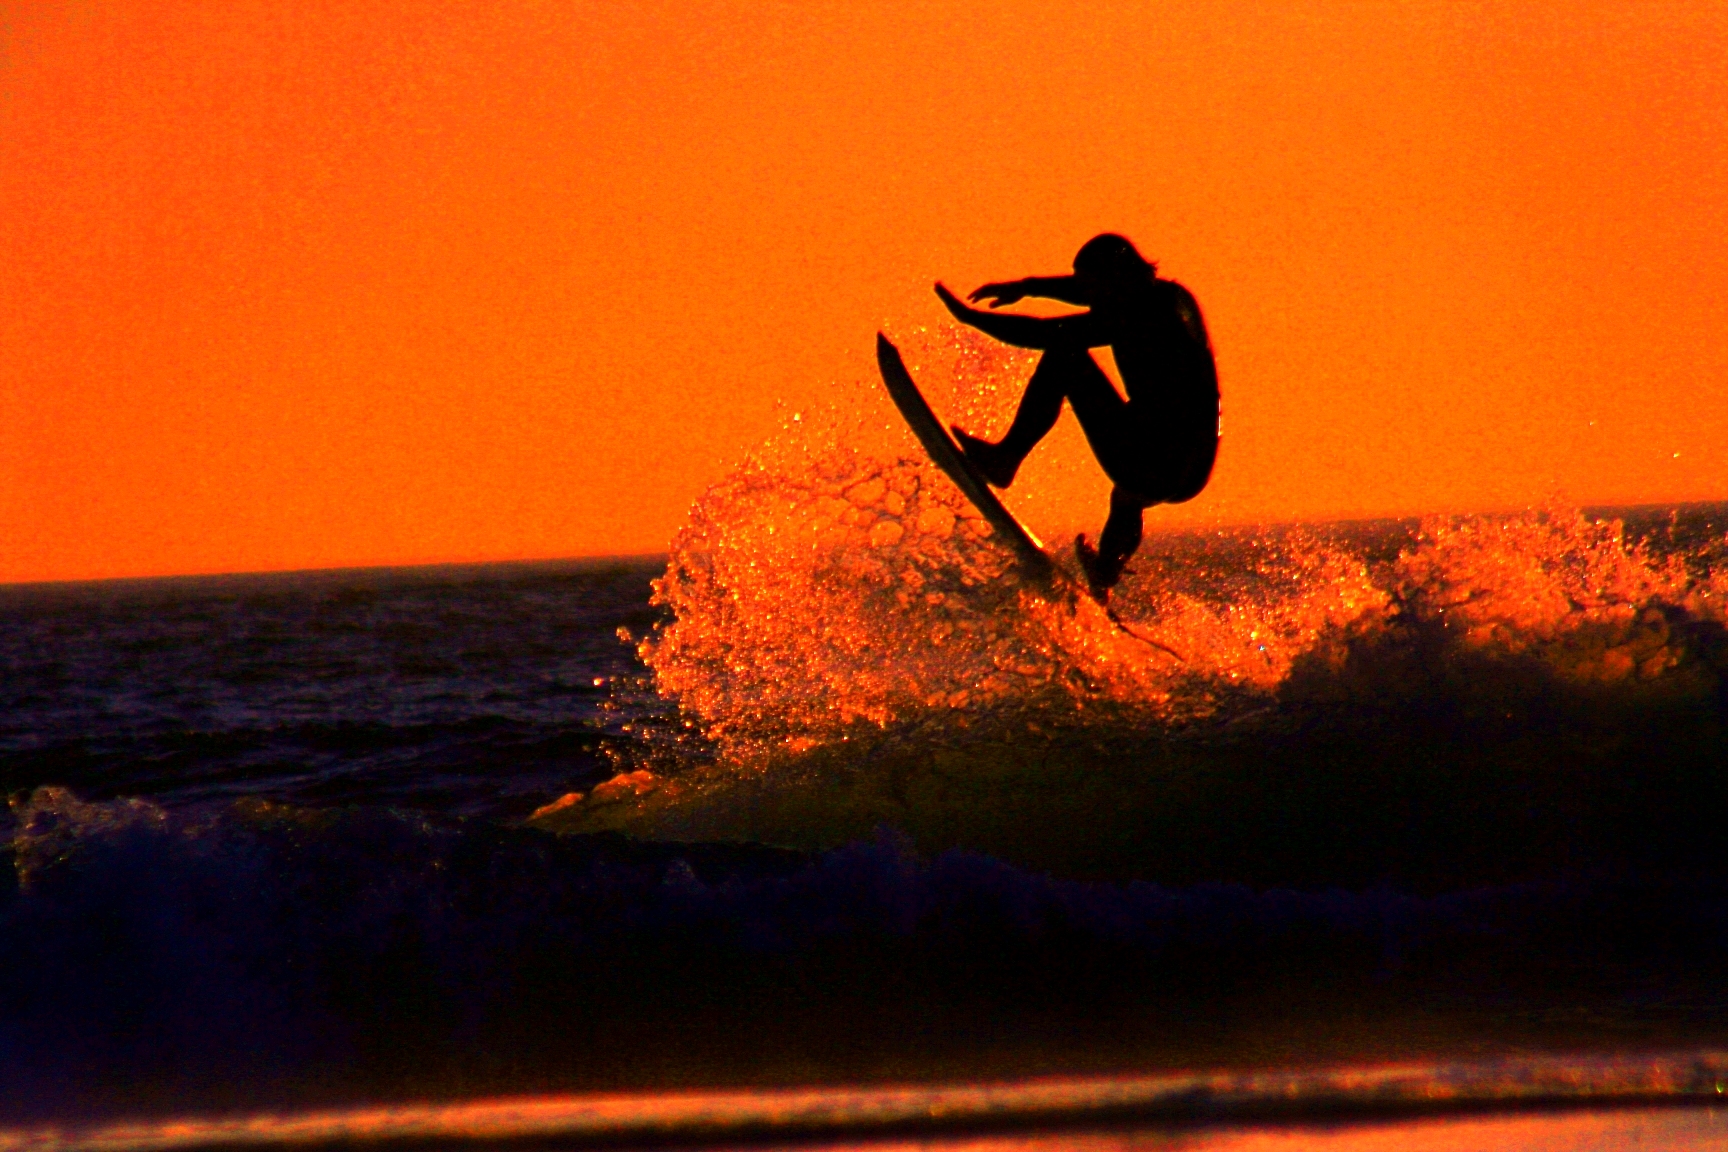 File:Sunset Surfer.jpg - Wikimedia Commons